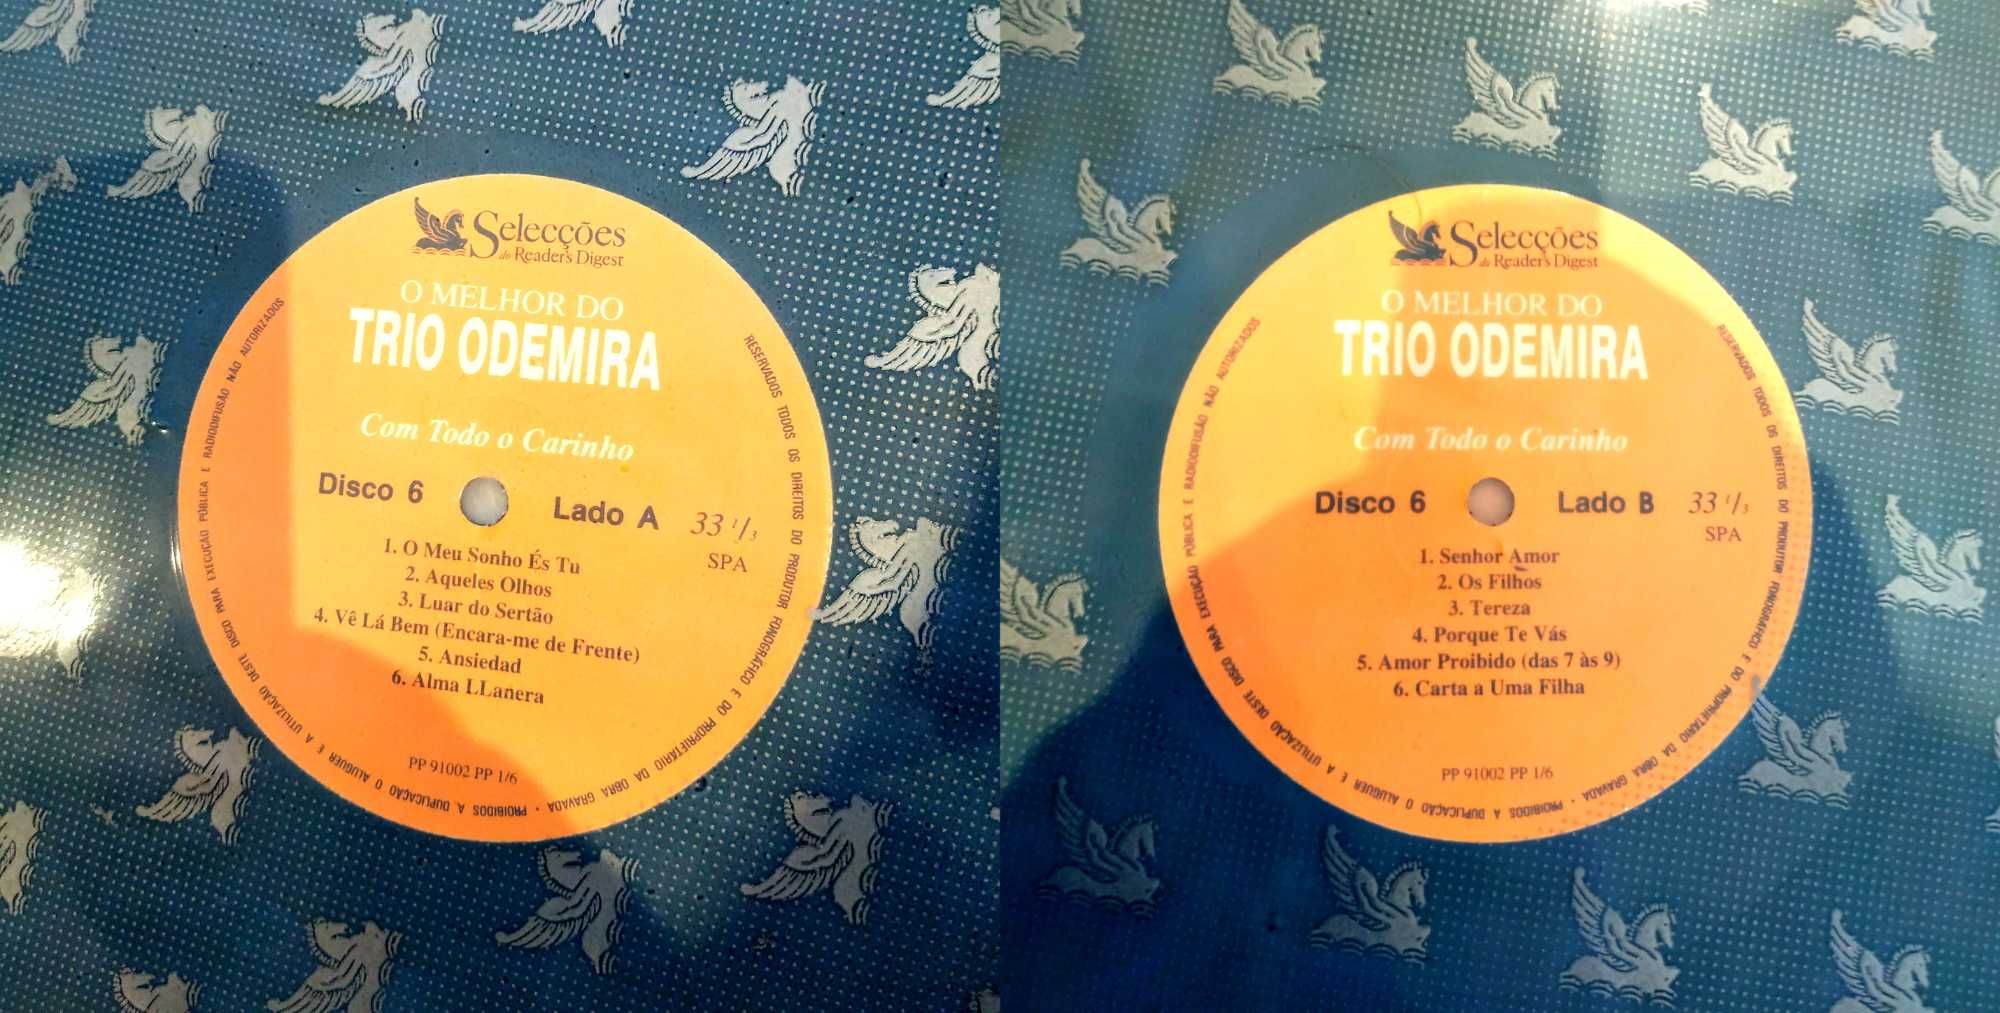 LP Colectânea "O melhor do Trio Odemira"